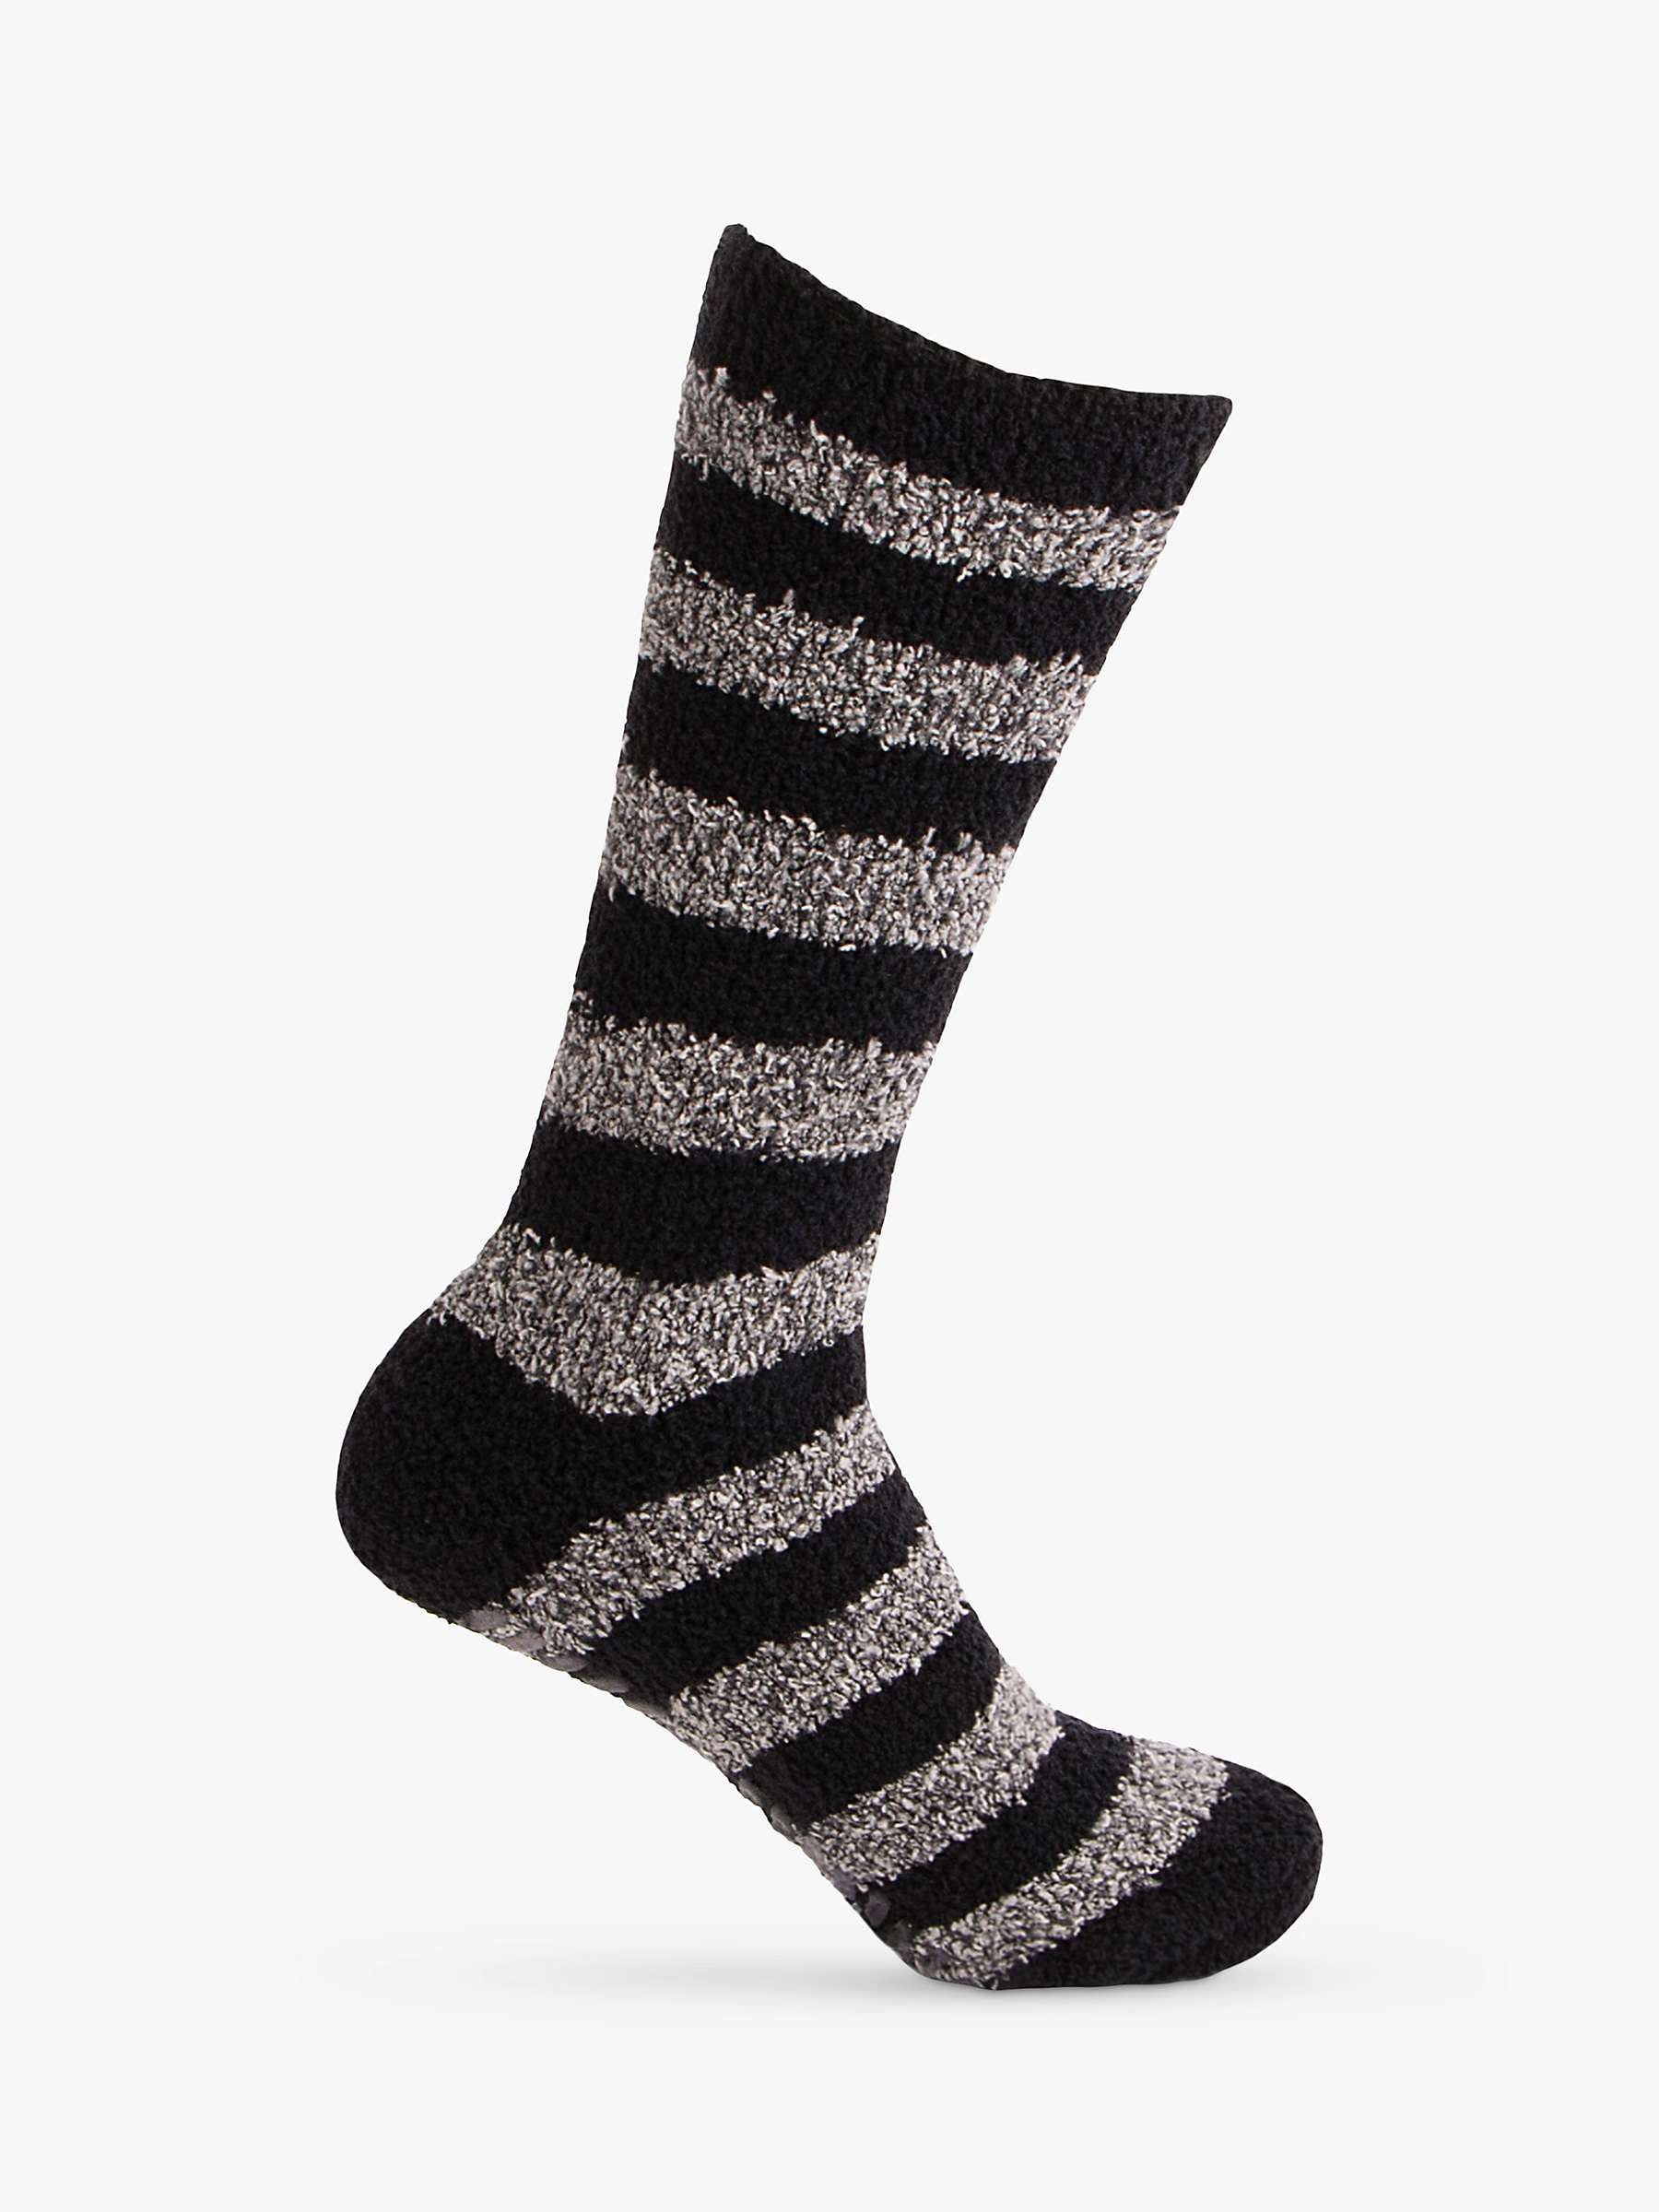 Buy totes Supersoft Slipper Socks, Pack of 2, Black/Grey Online at johnlewis.com